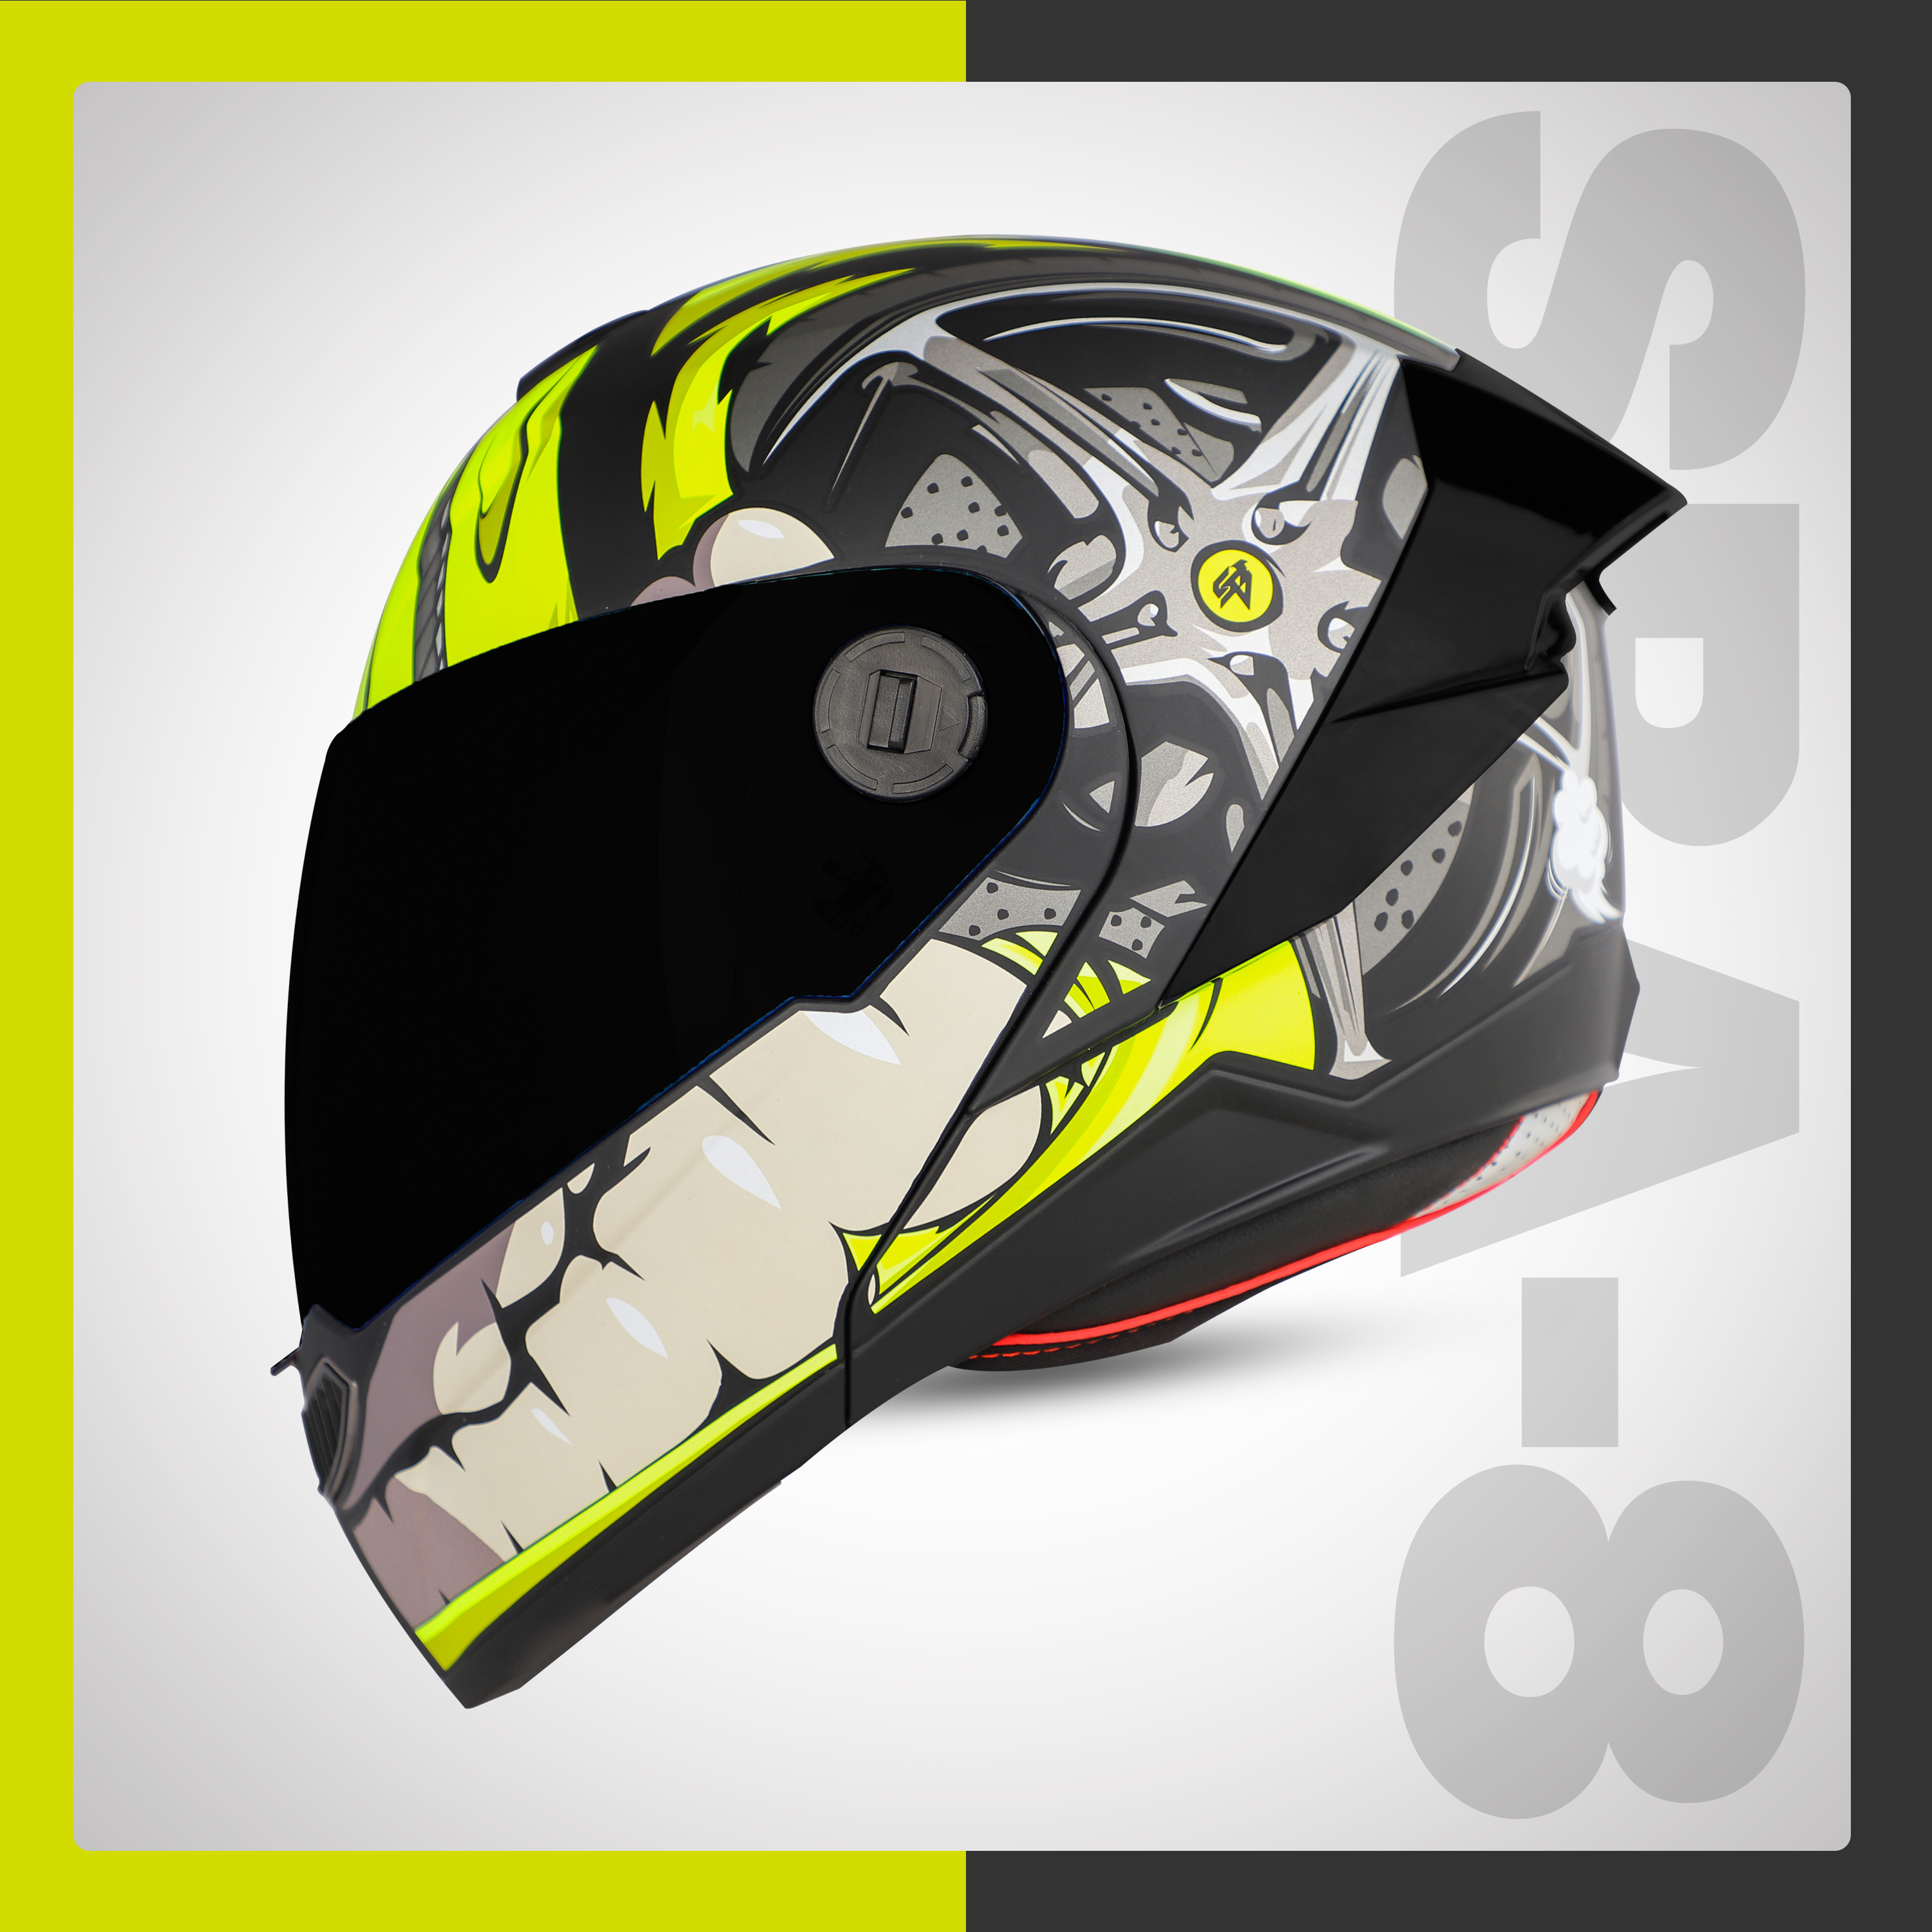 Steelbird SBA-8 Crazy Wheel ISI Certified Flip-Up Helmet For Men And Women (Matt Black Neon With Smoke Visor)